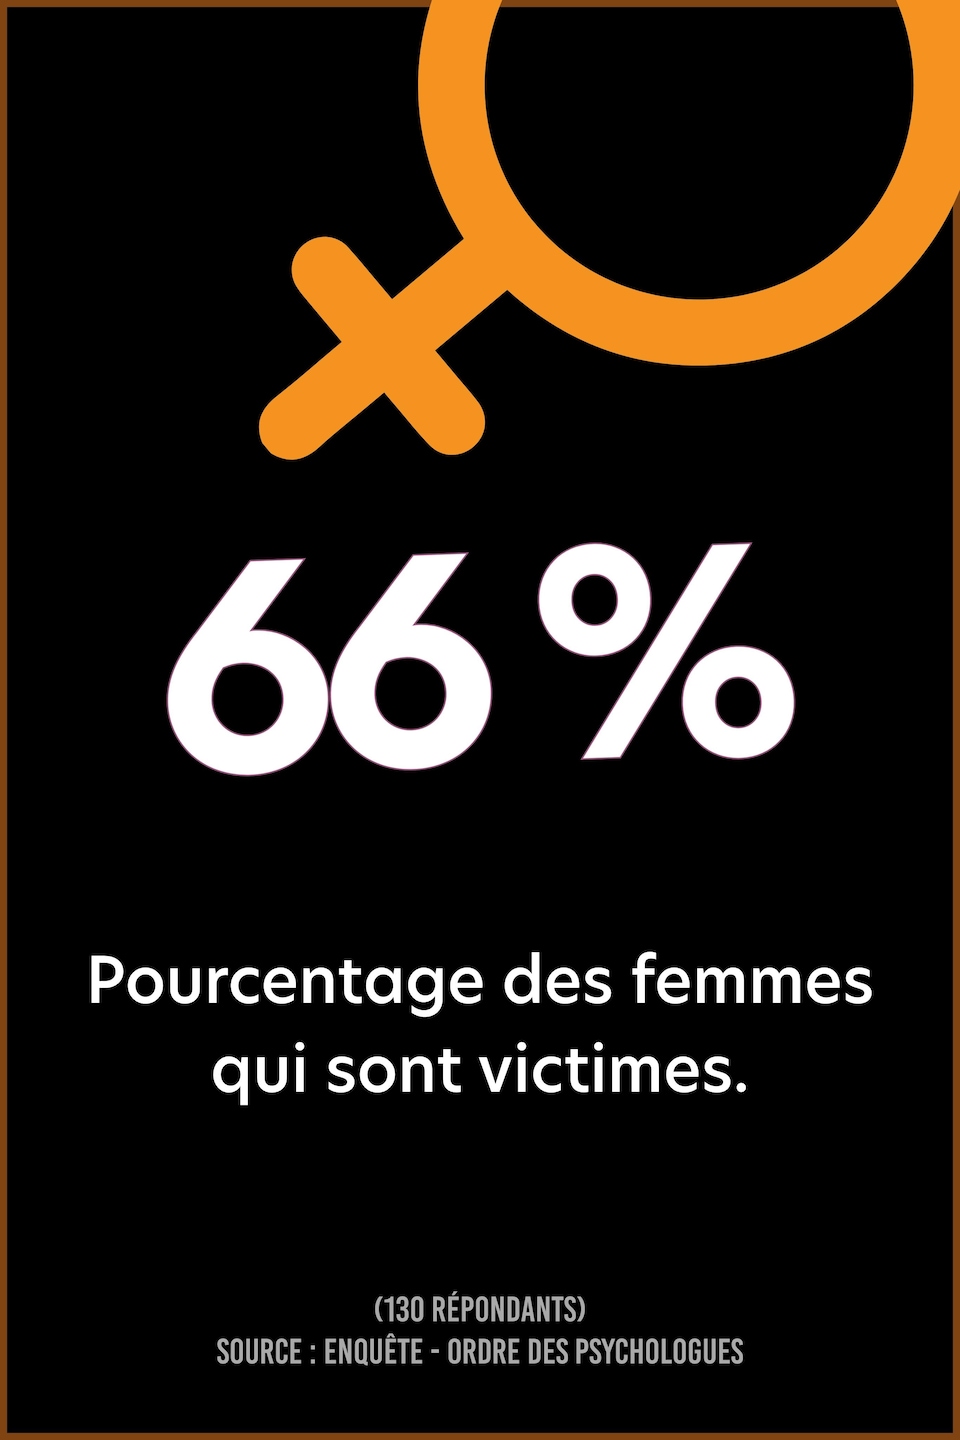 66 % Pourcentage des femmes qui sont victimes.